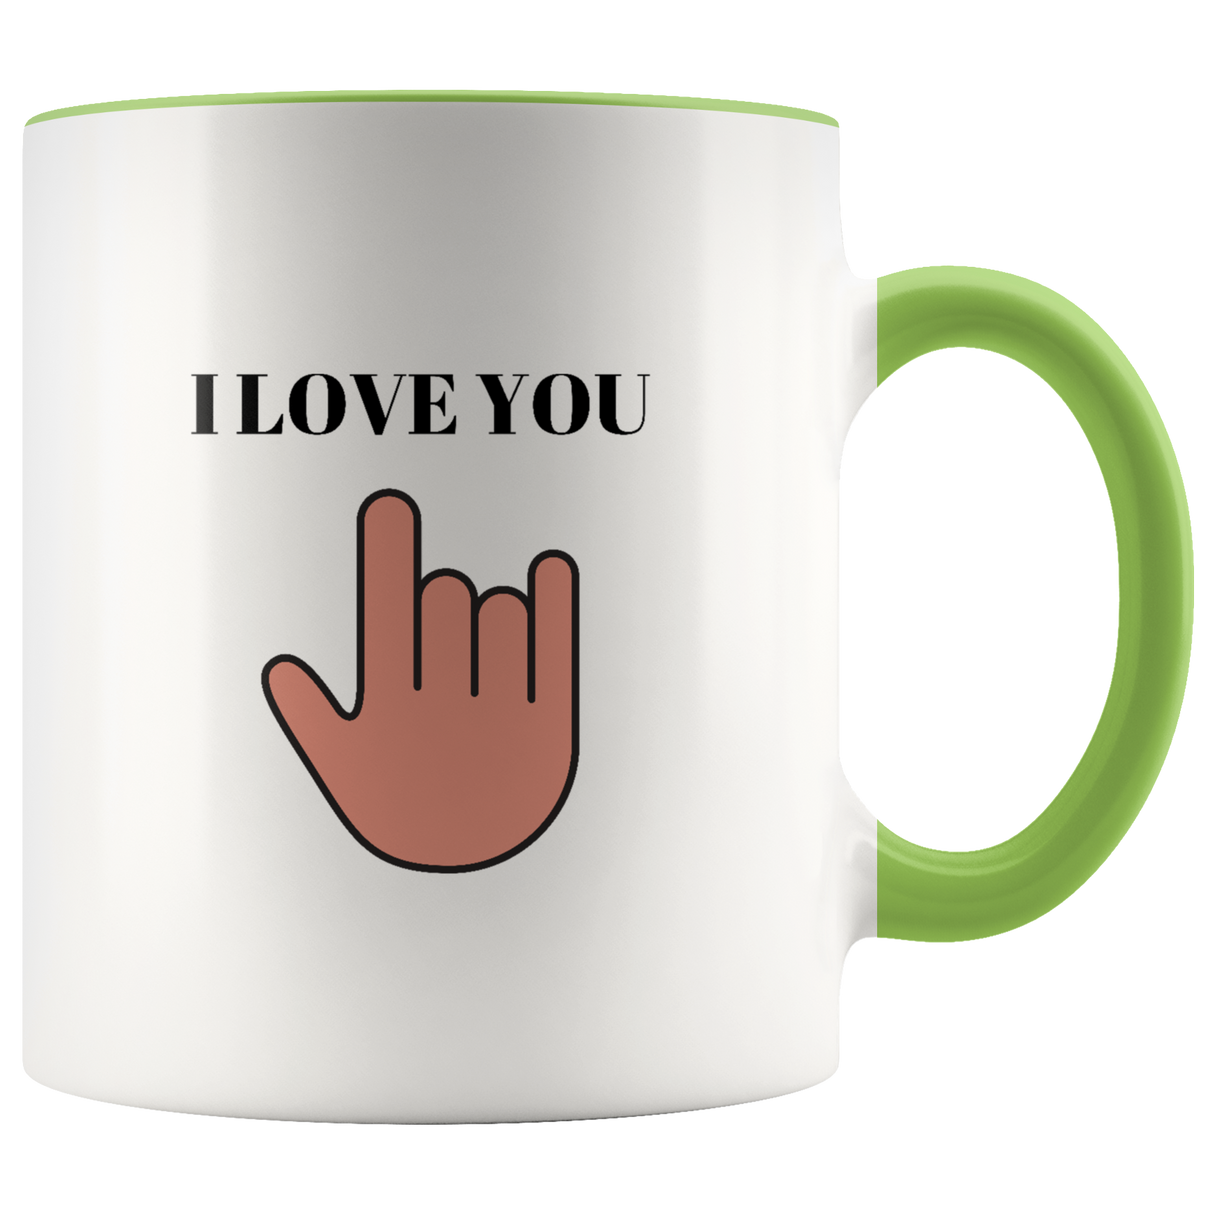 I Love You Mug Ceramic Accent Mug - Green | Shop Sassy Chick